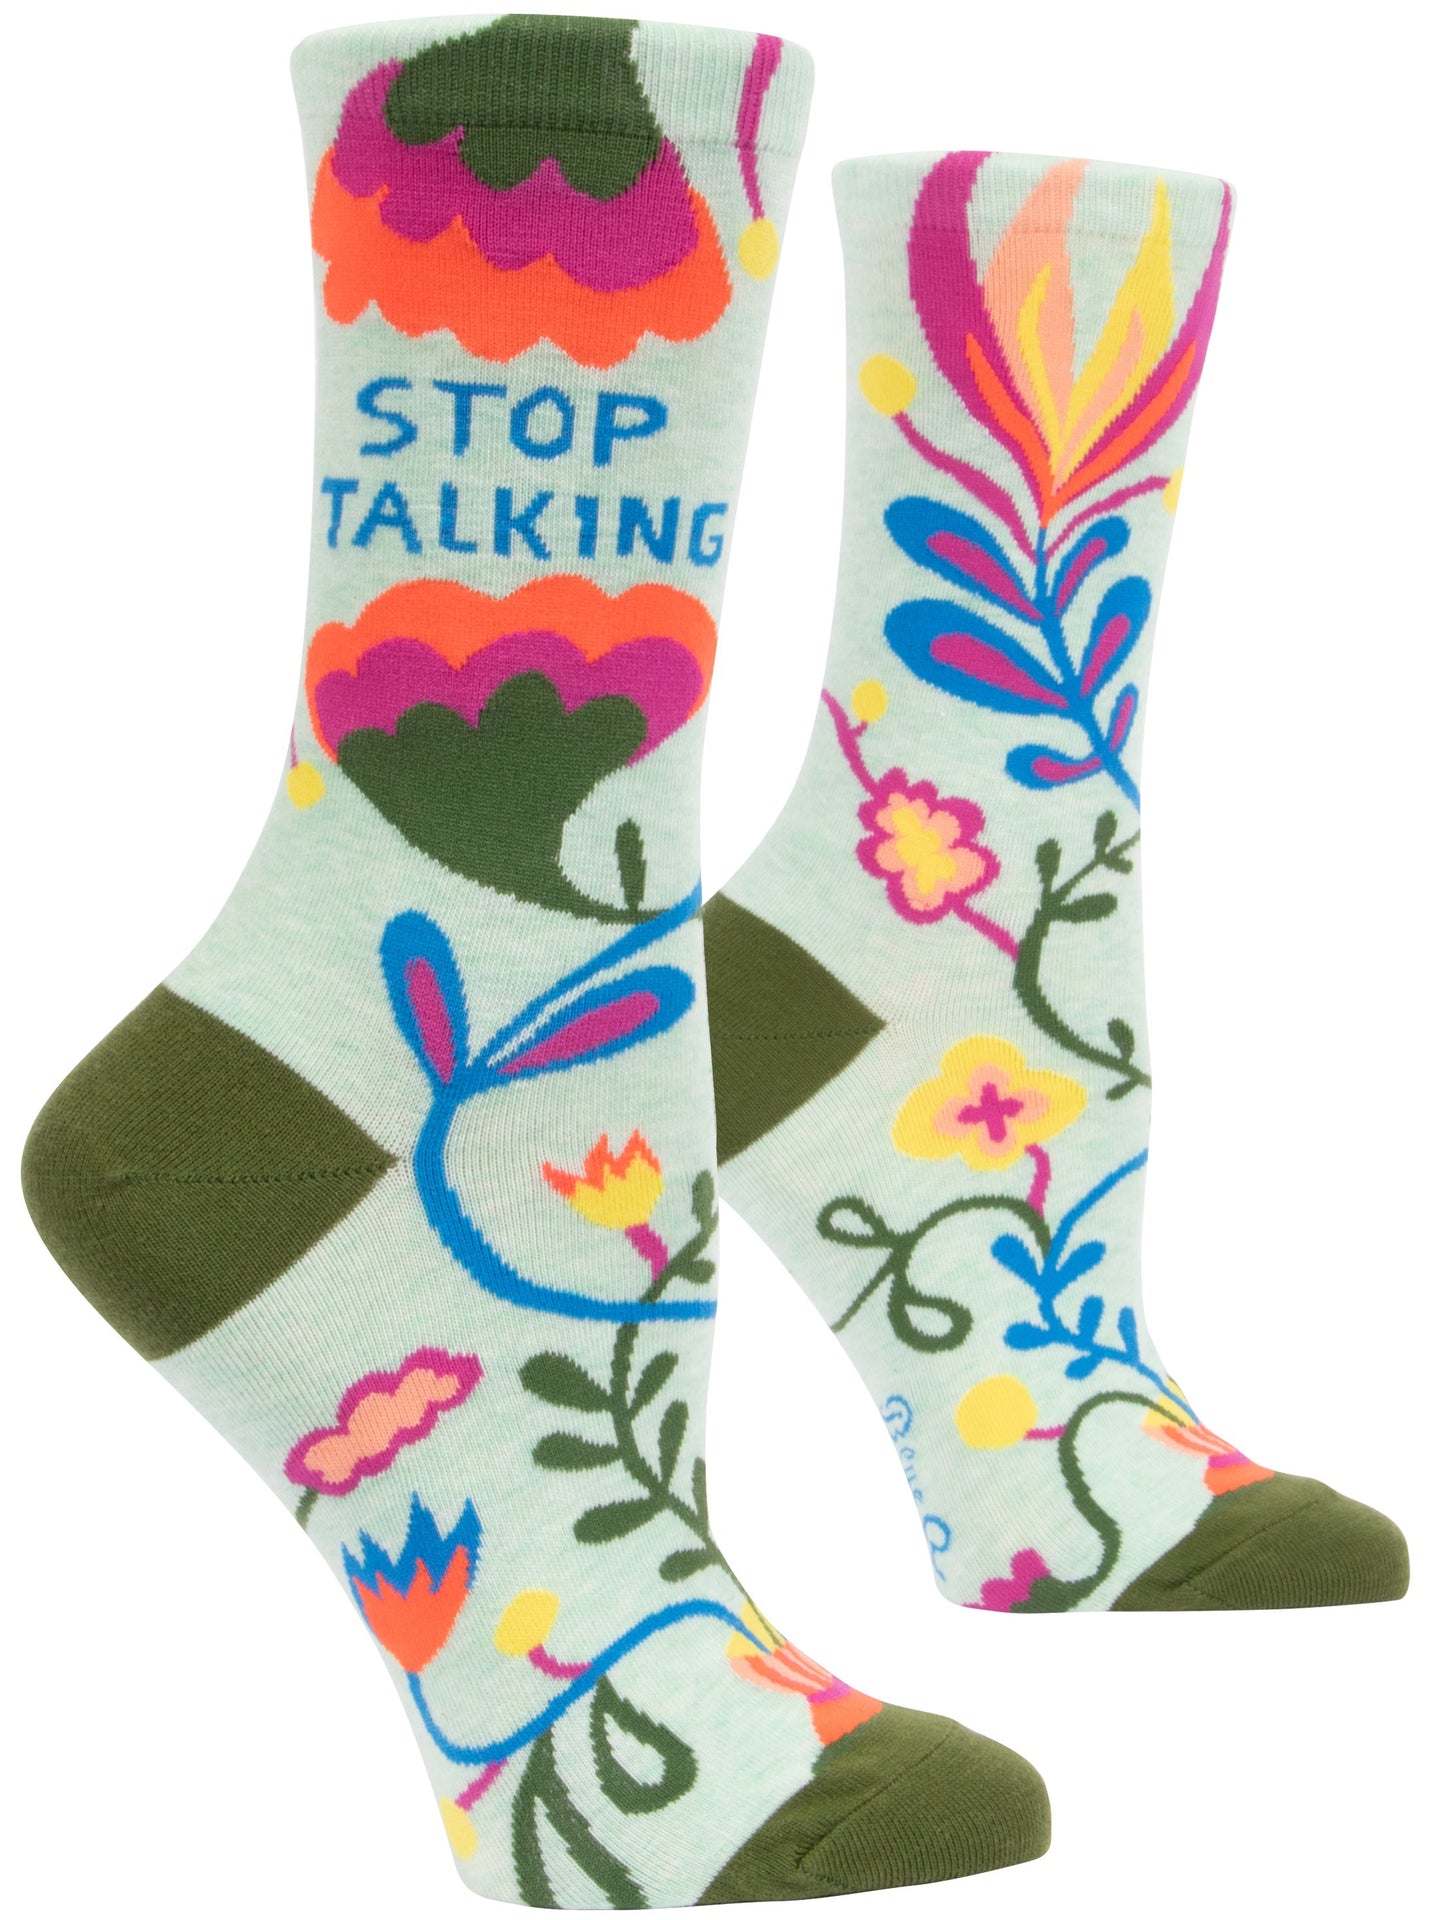 Blue Q - Women's Crew Socks - Stop Talking